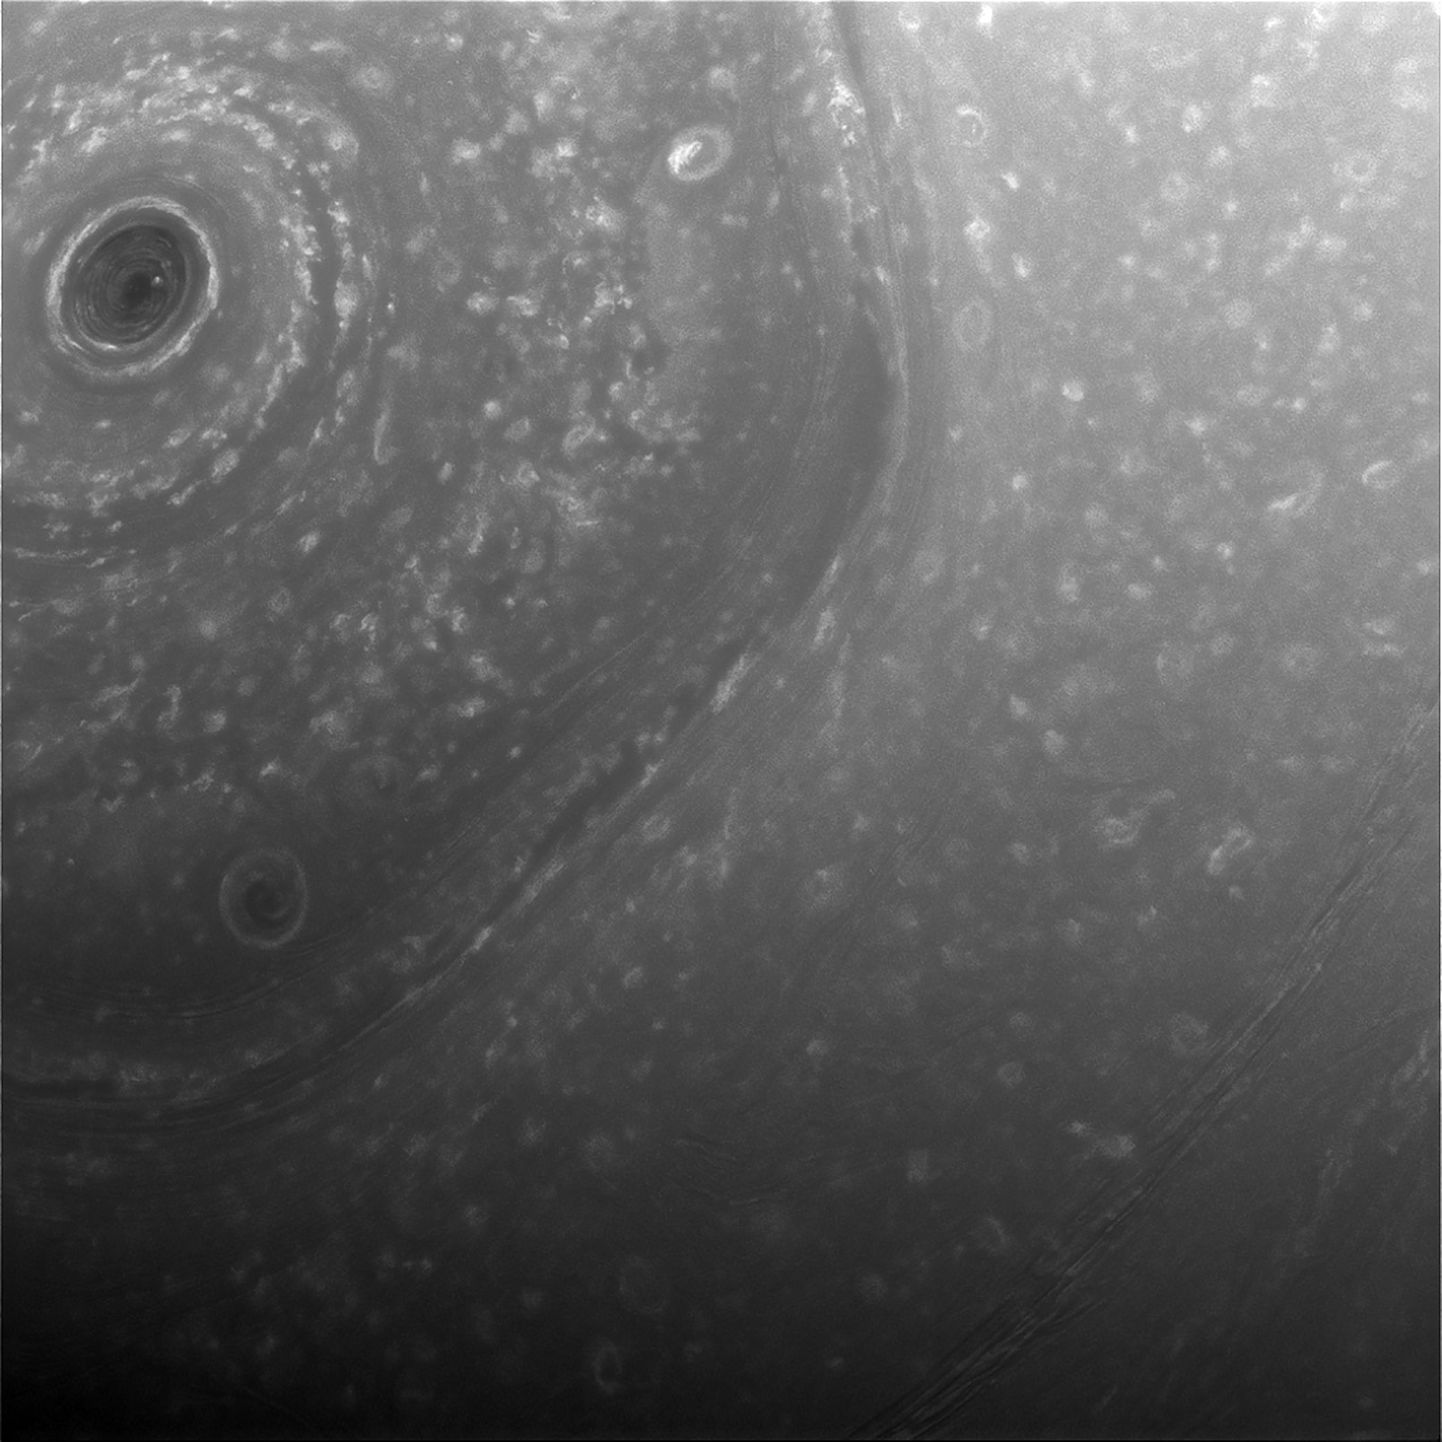 Cassini tehtud foto Saturni põhjapoolkeral asuvatest hiiglaslikest kuusnurksetest ringidest. Pildi tegi Cassini 3. detsembril, mil ta lendas Saturnist mööda umbes 390 000 kilomeetri kauguselt.